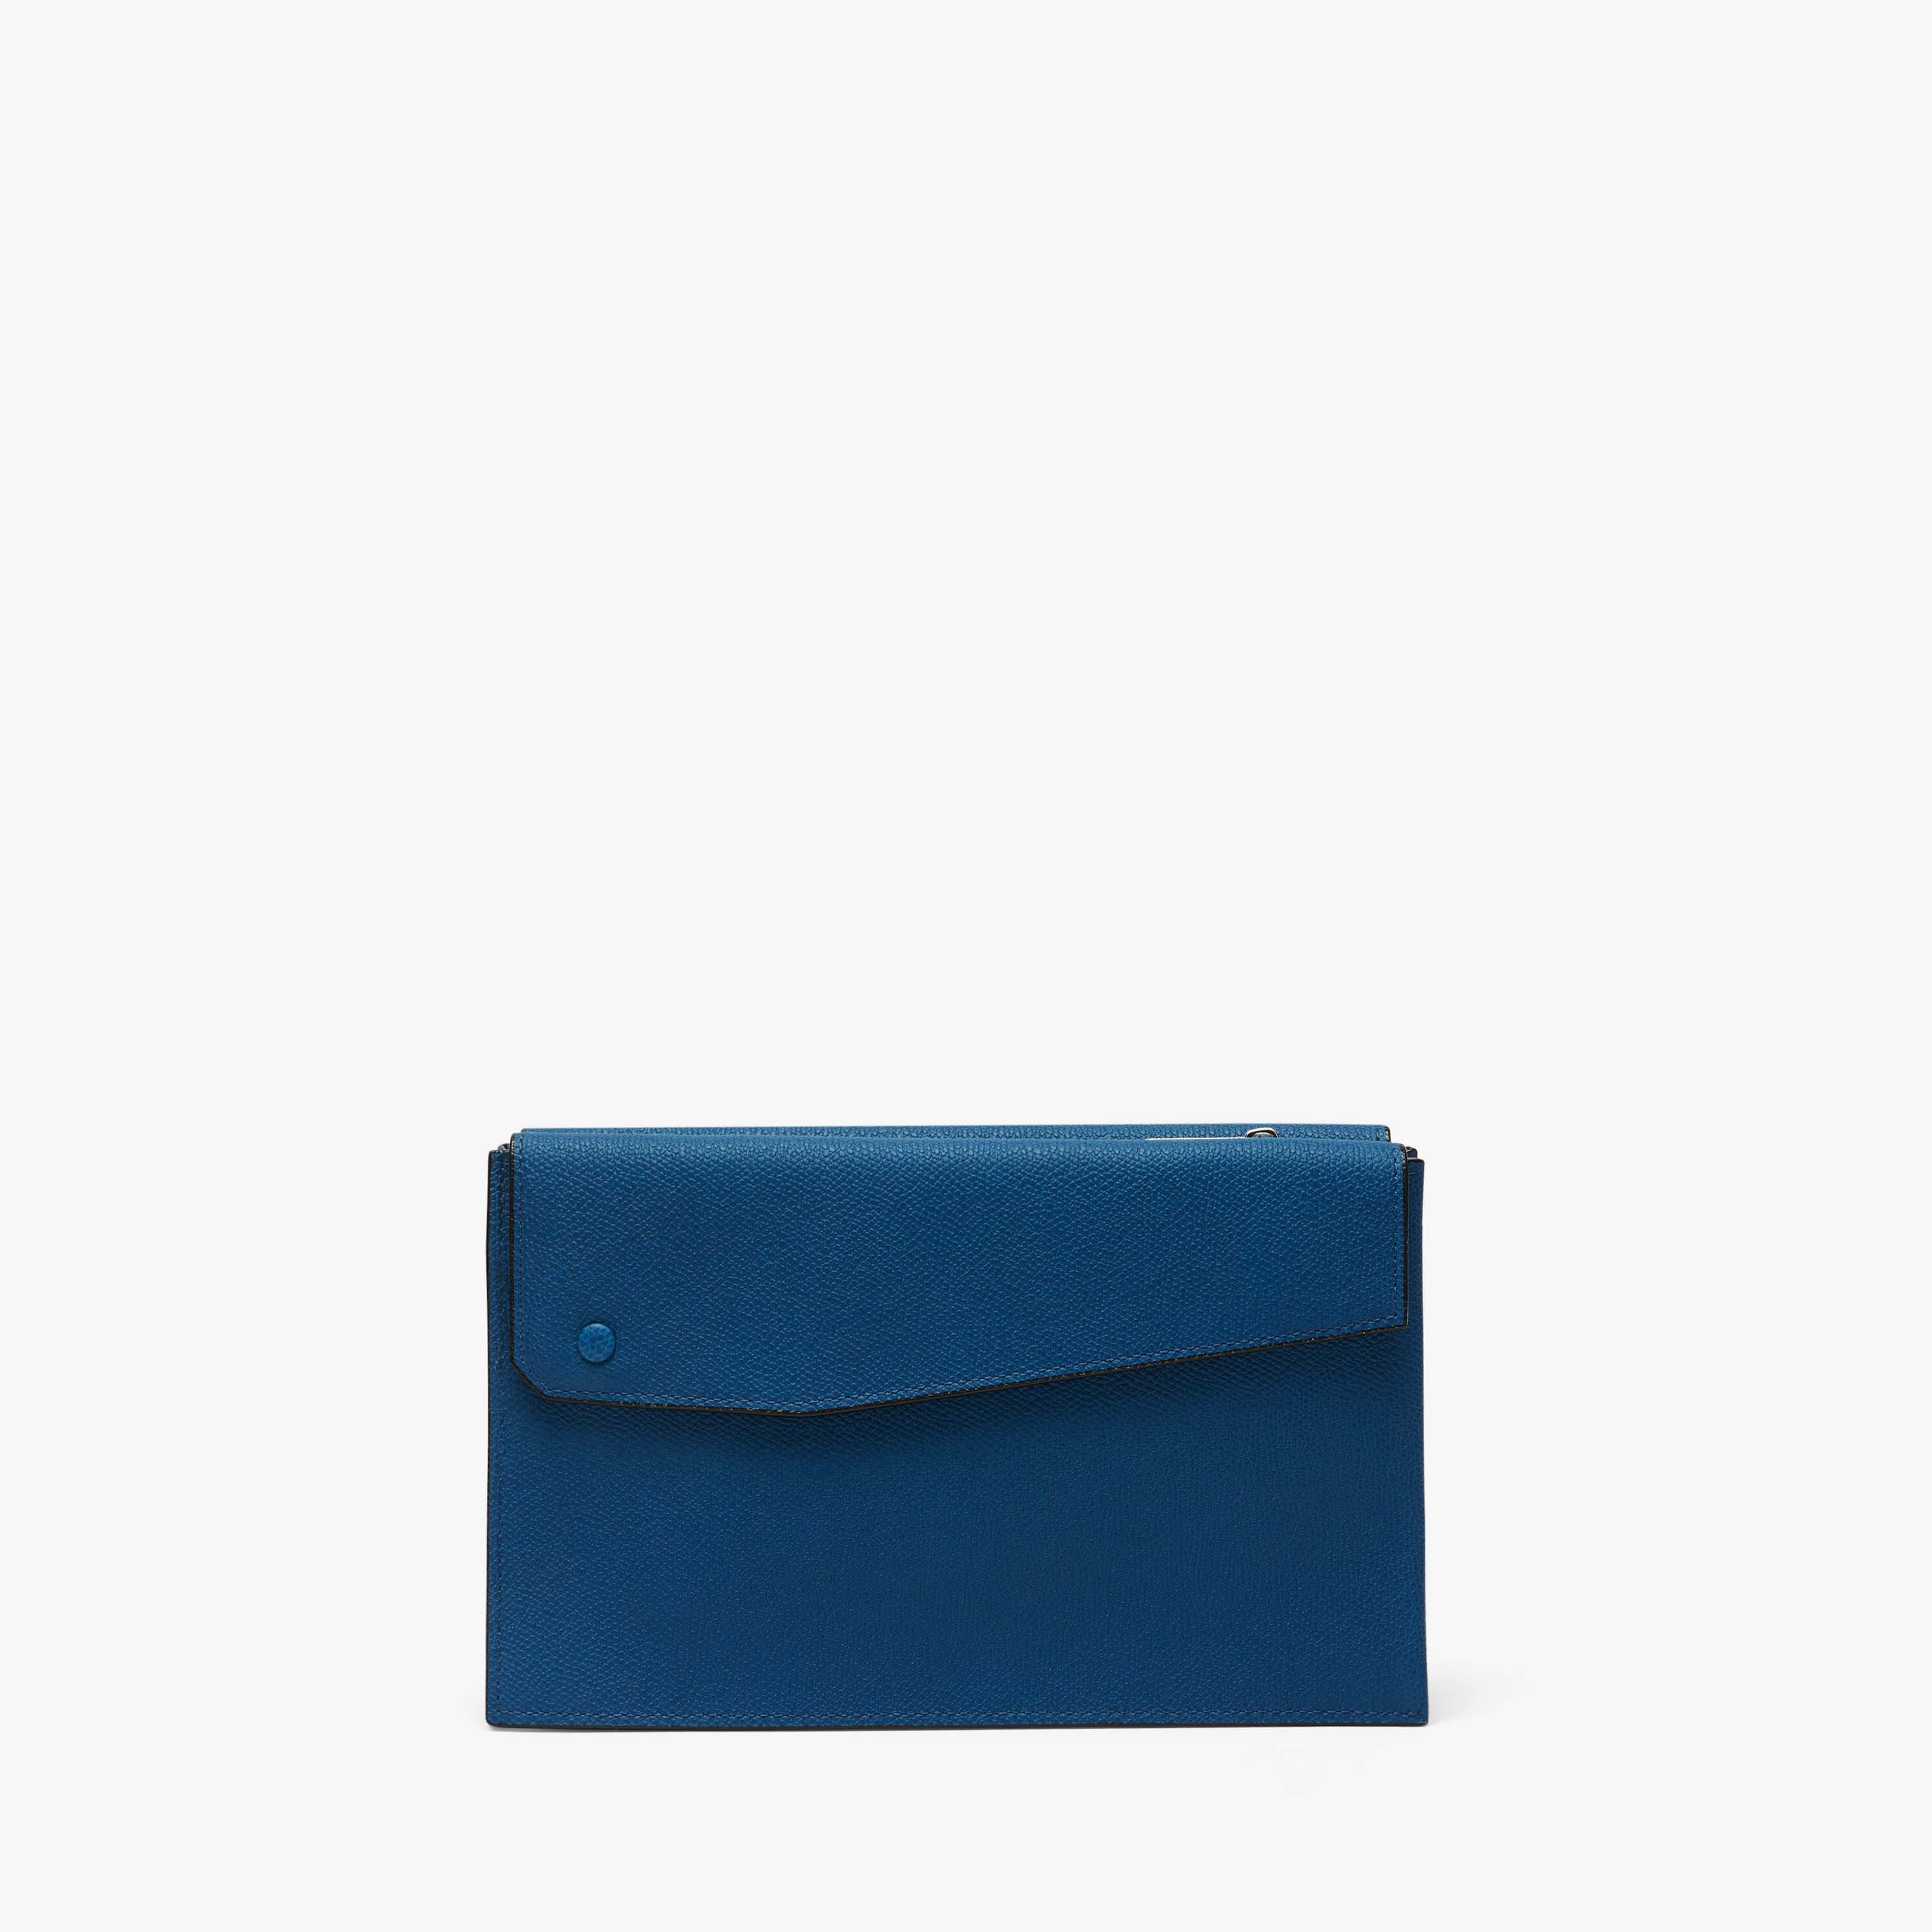 Pocket Crossbody Bag - Denim Blue - Vitello VS - Valextra - 6